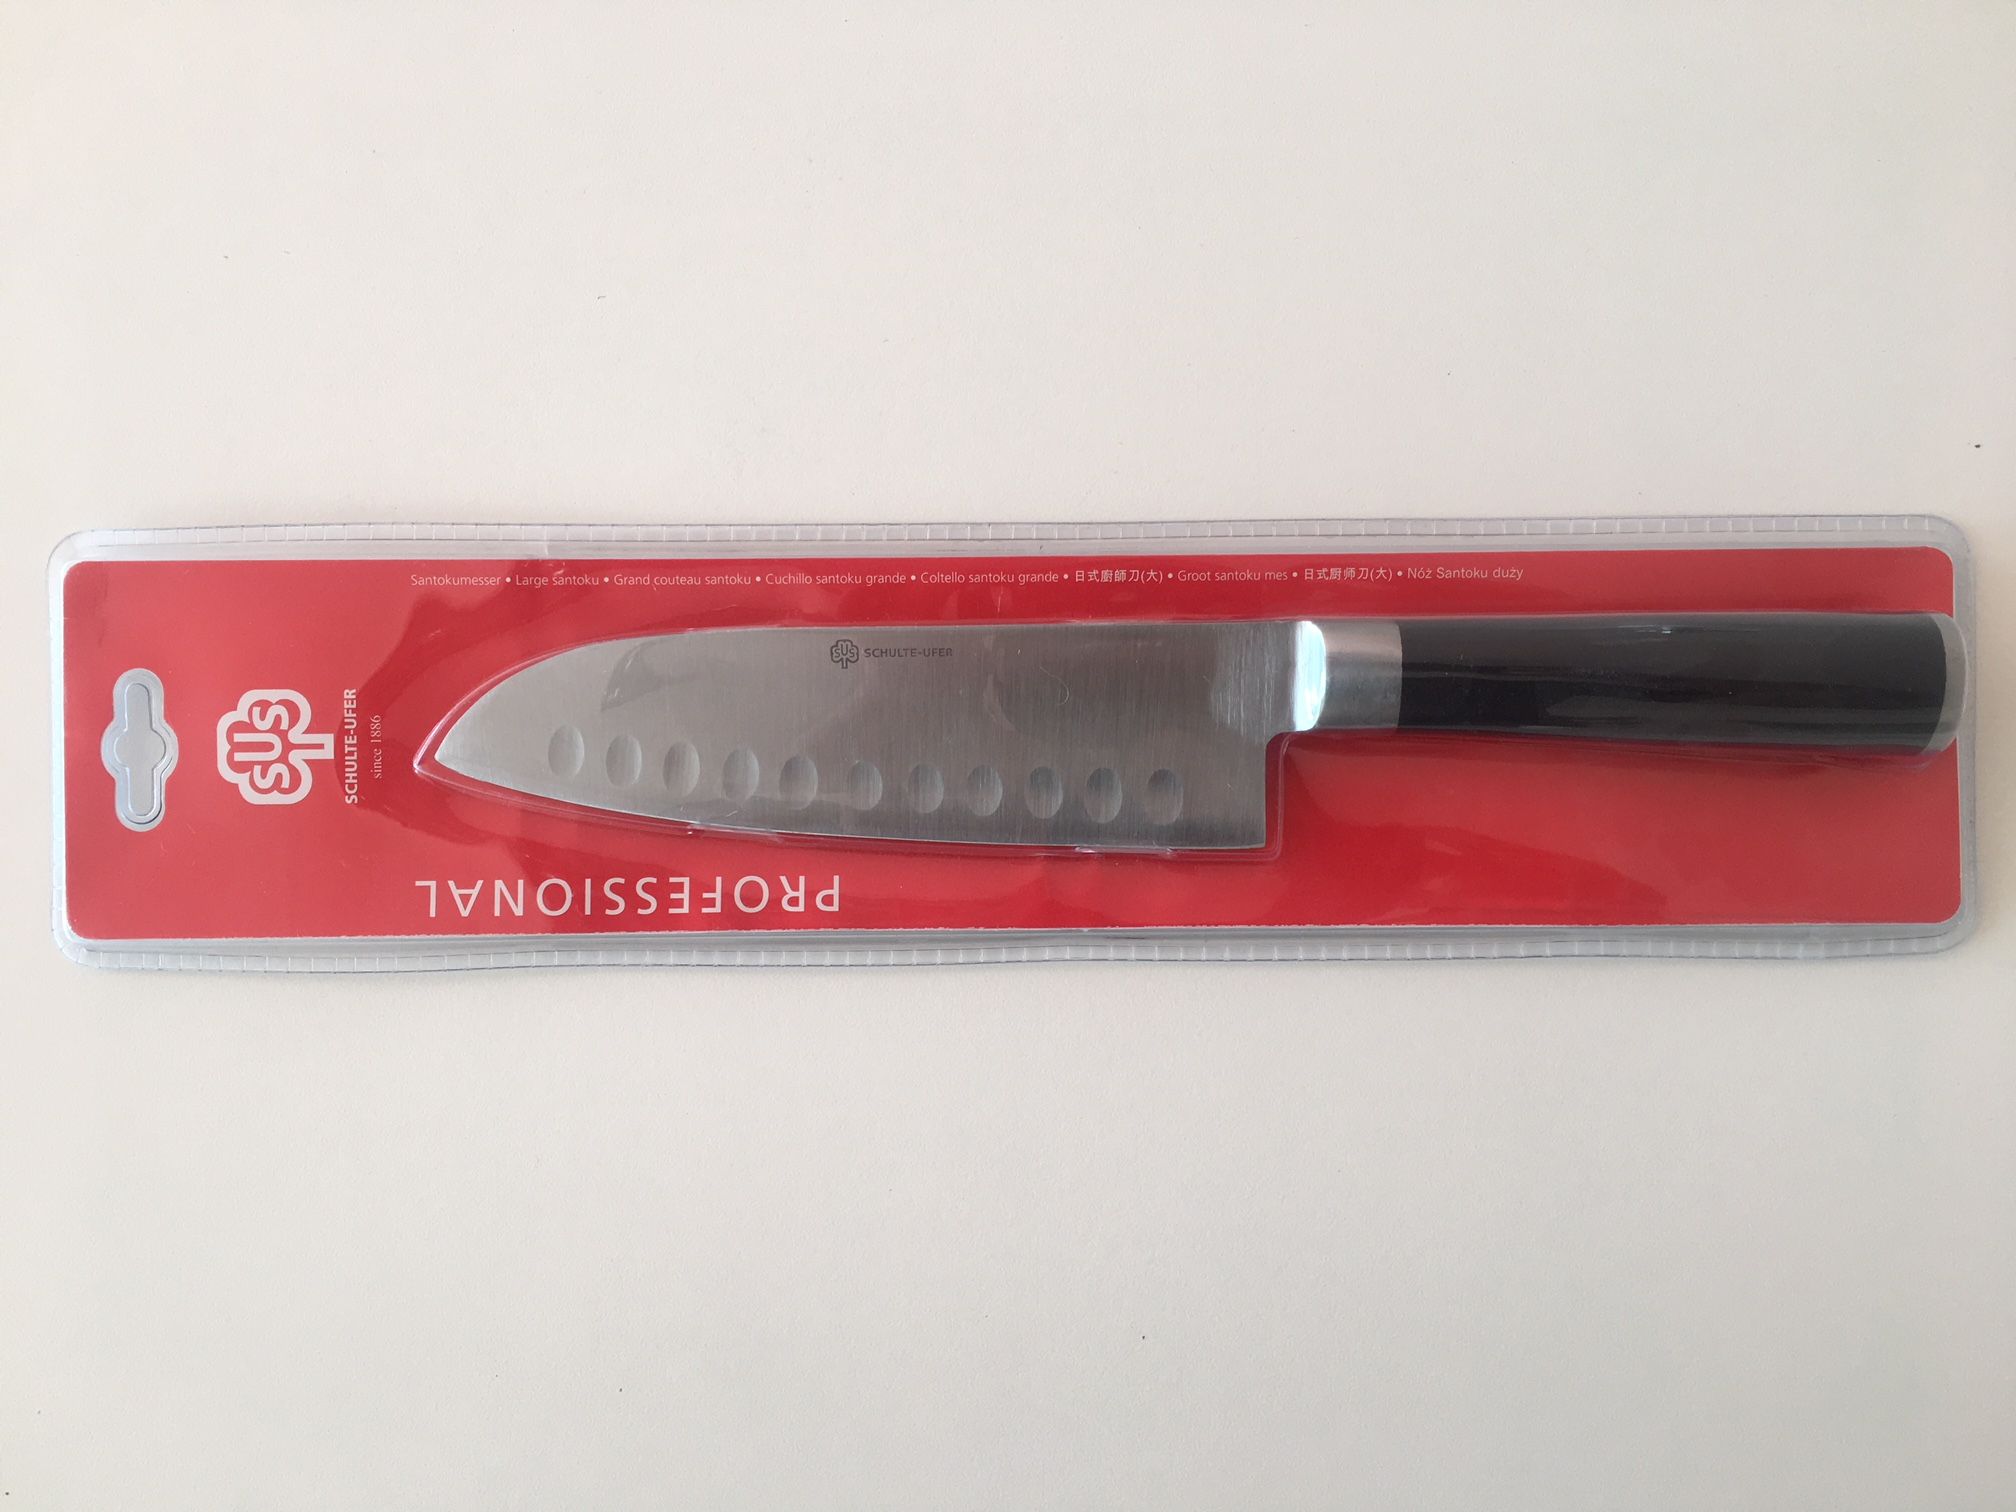 Schulte-Ufer, Kuchyňský nůž, kvalitní ocel, 18cm - RychlýDárky.cz